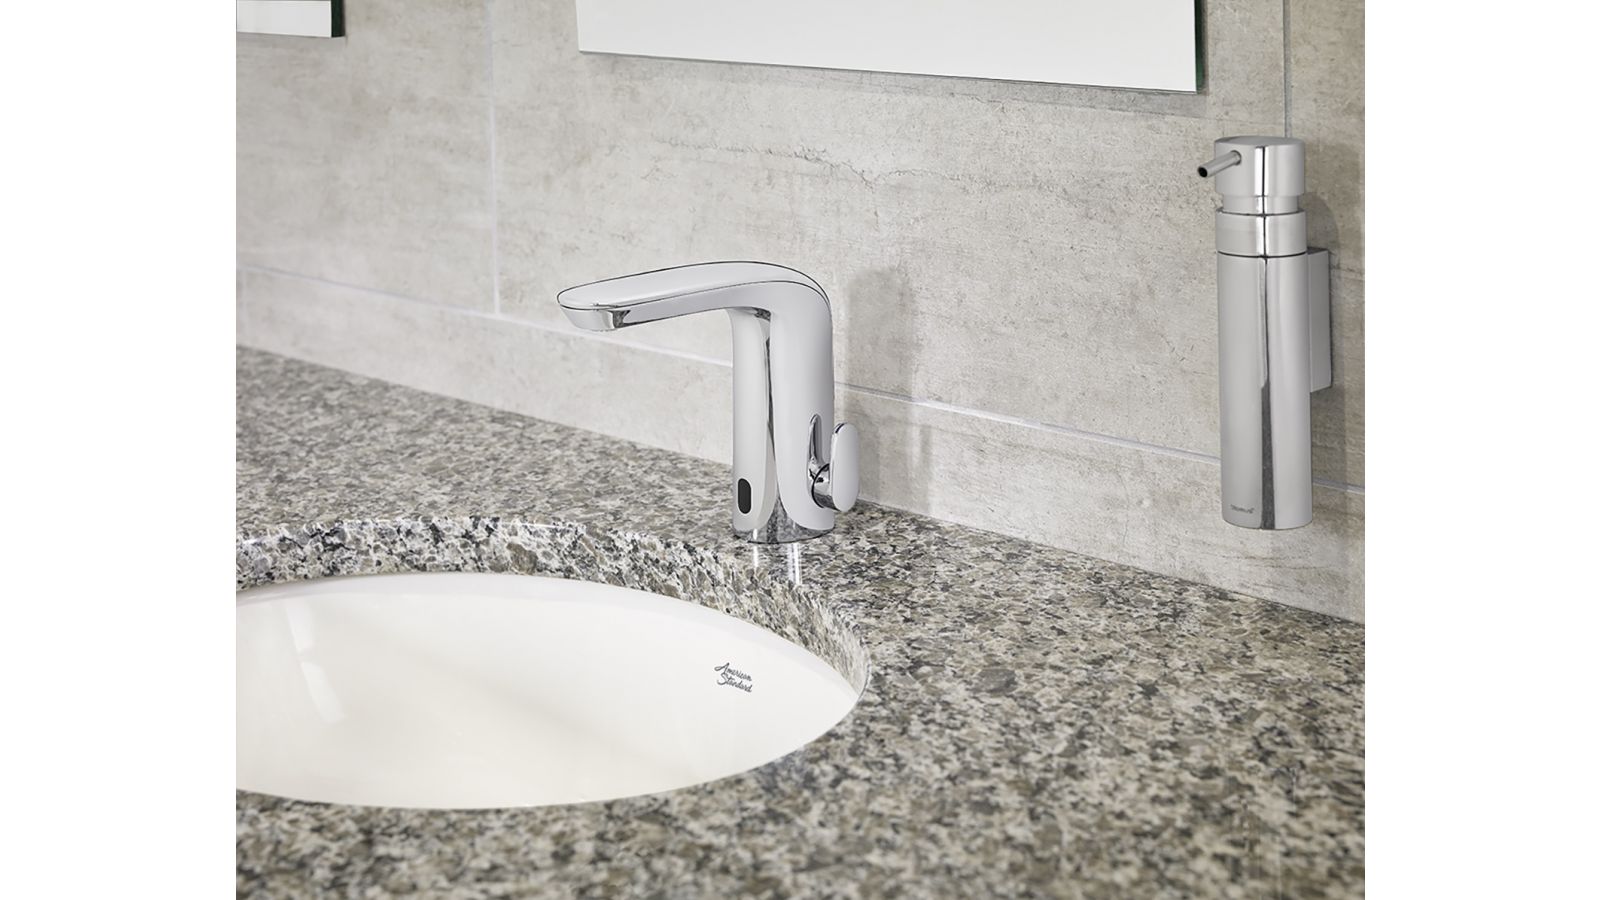 NextGen Selectronic commercial faucets